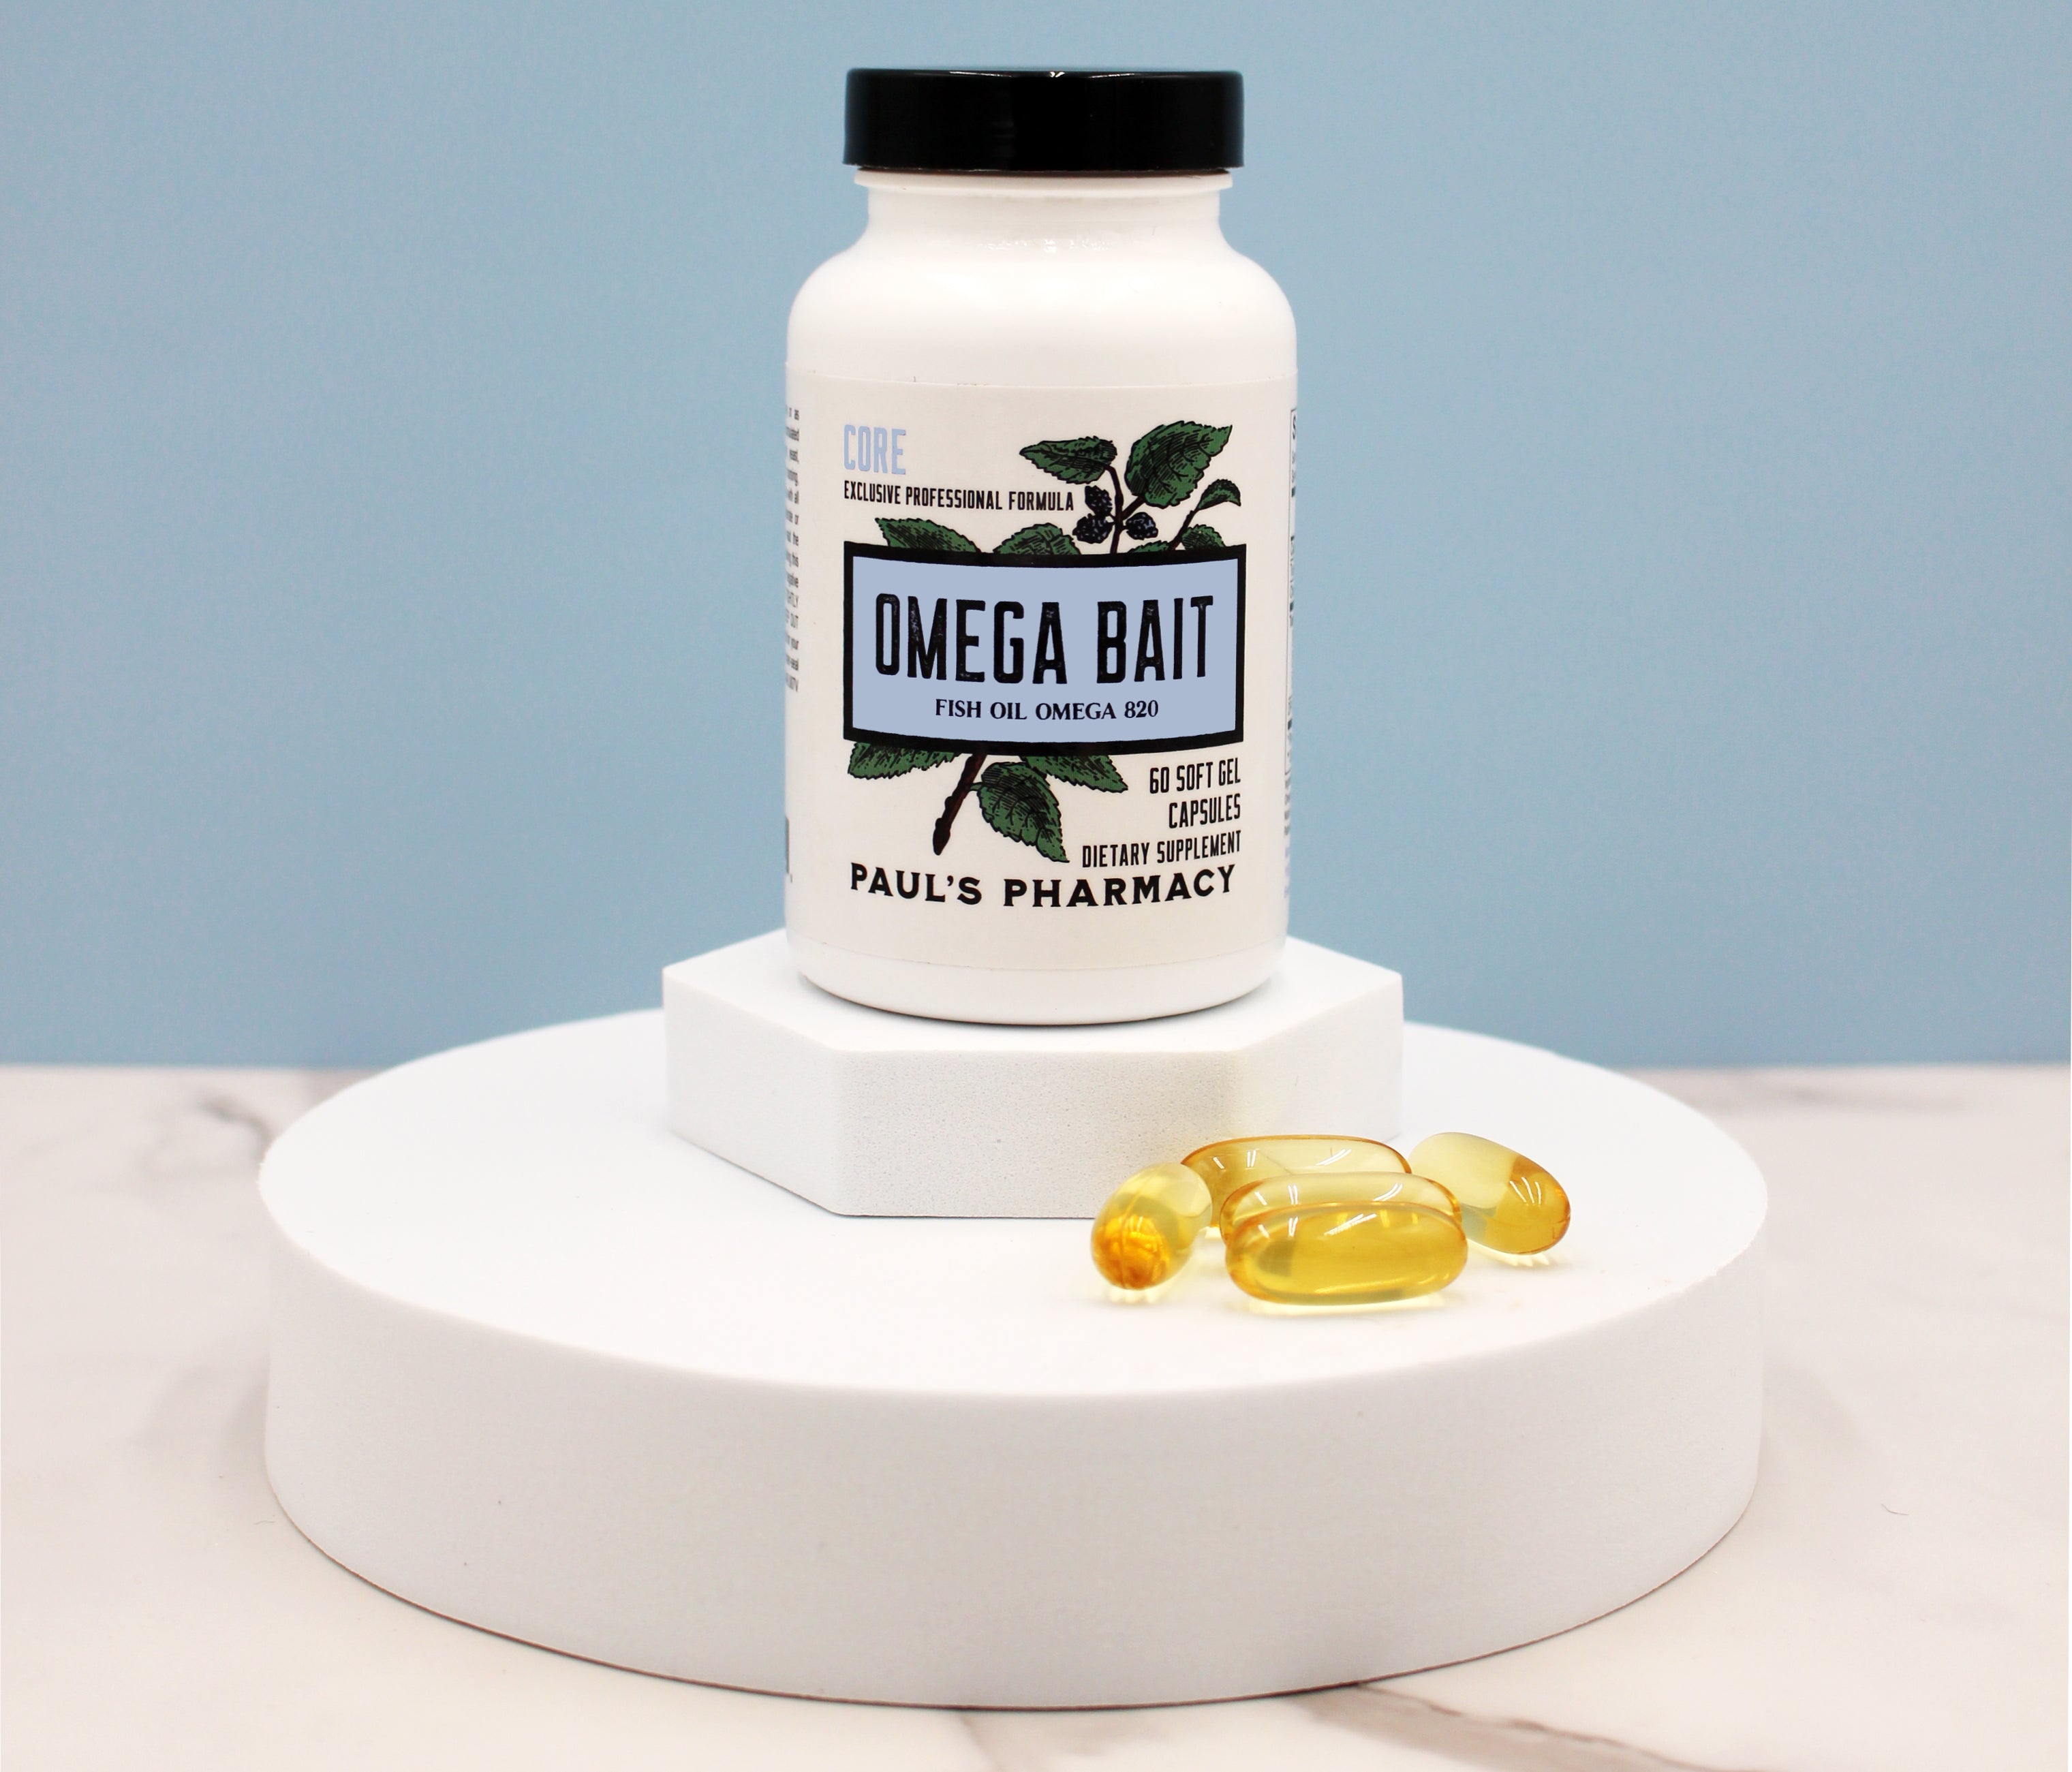 OMEGA BAIT – Paul's Pharmacy